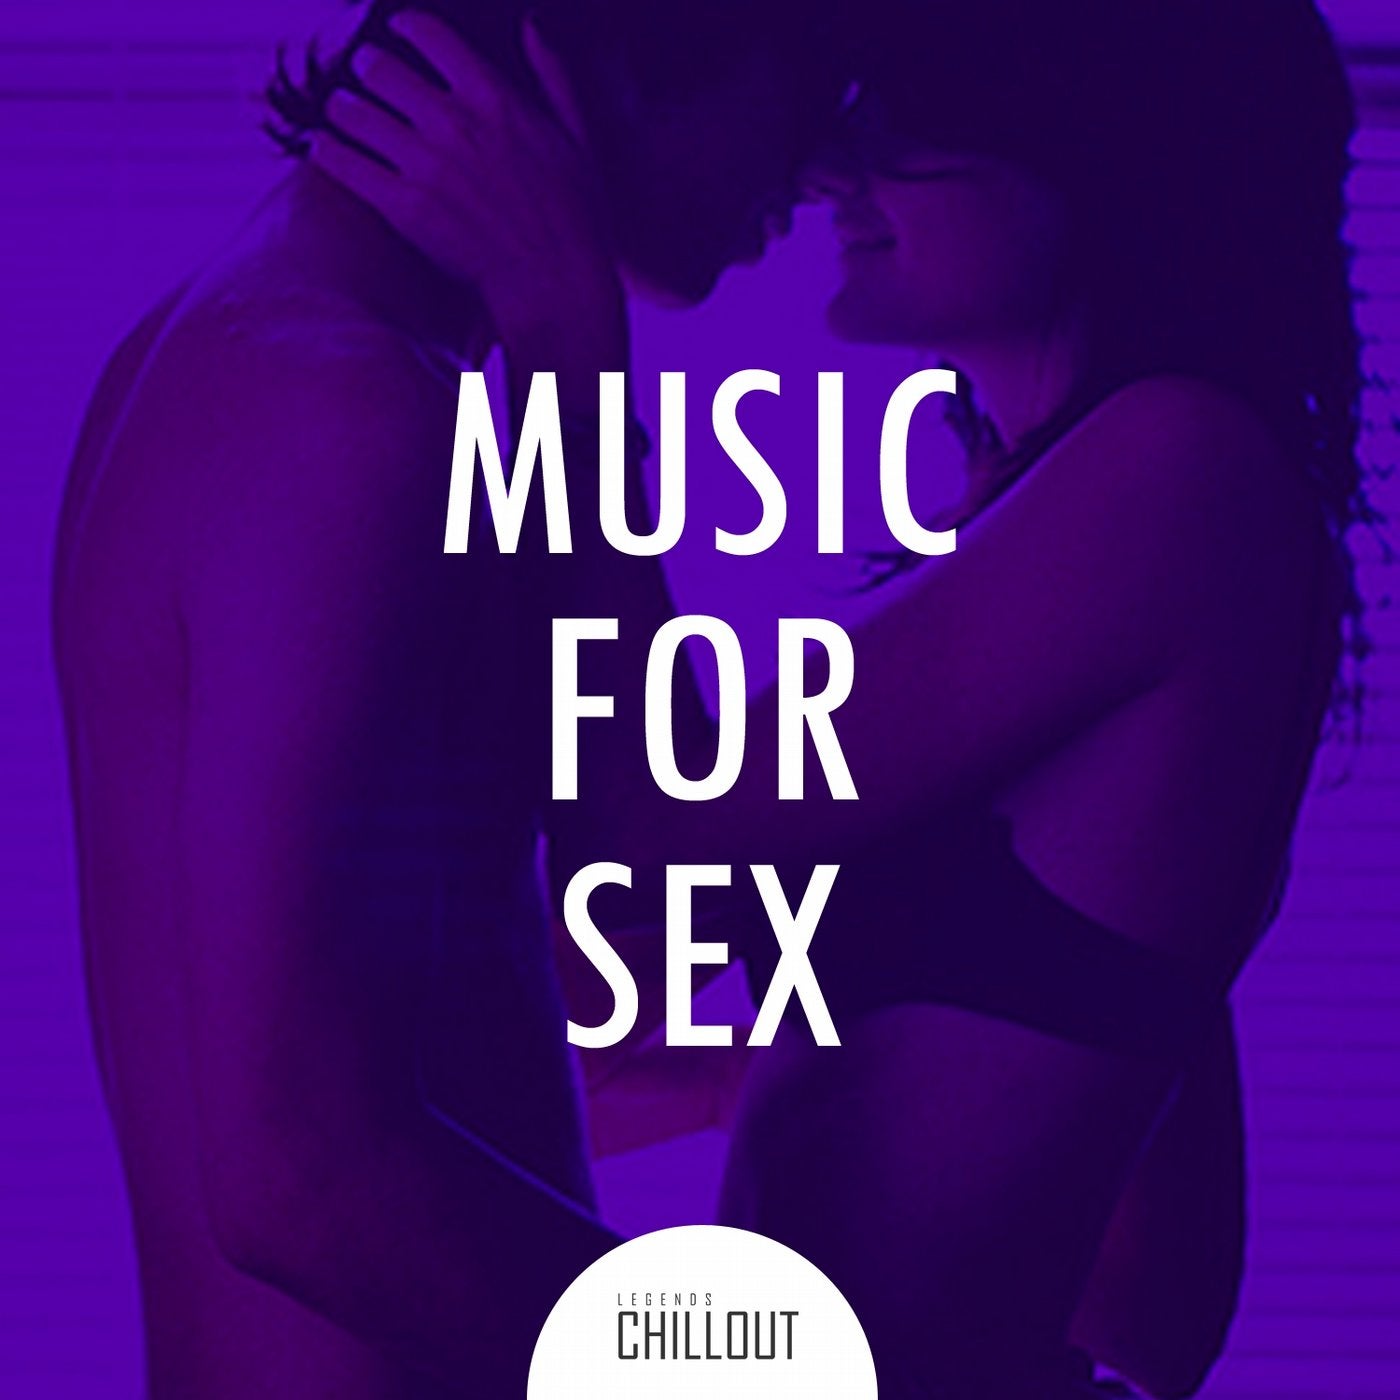 2017 Music for Sex - Erotic Music